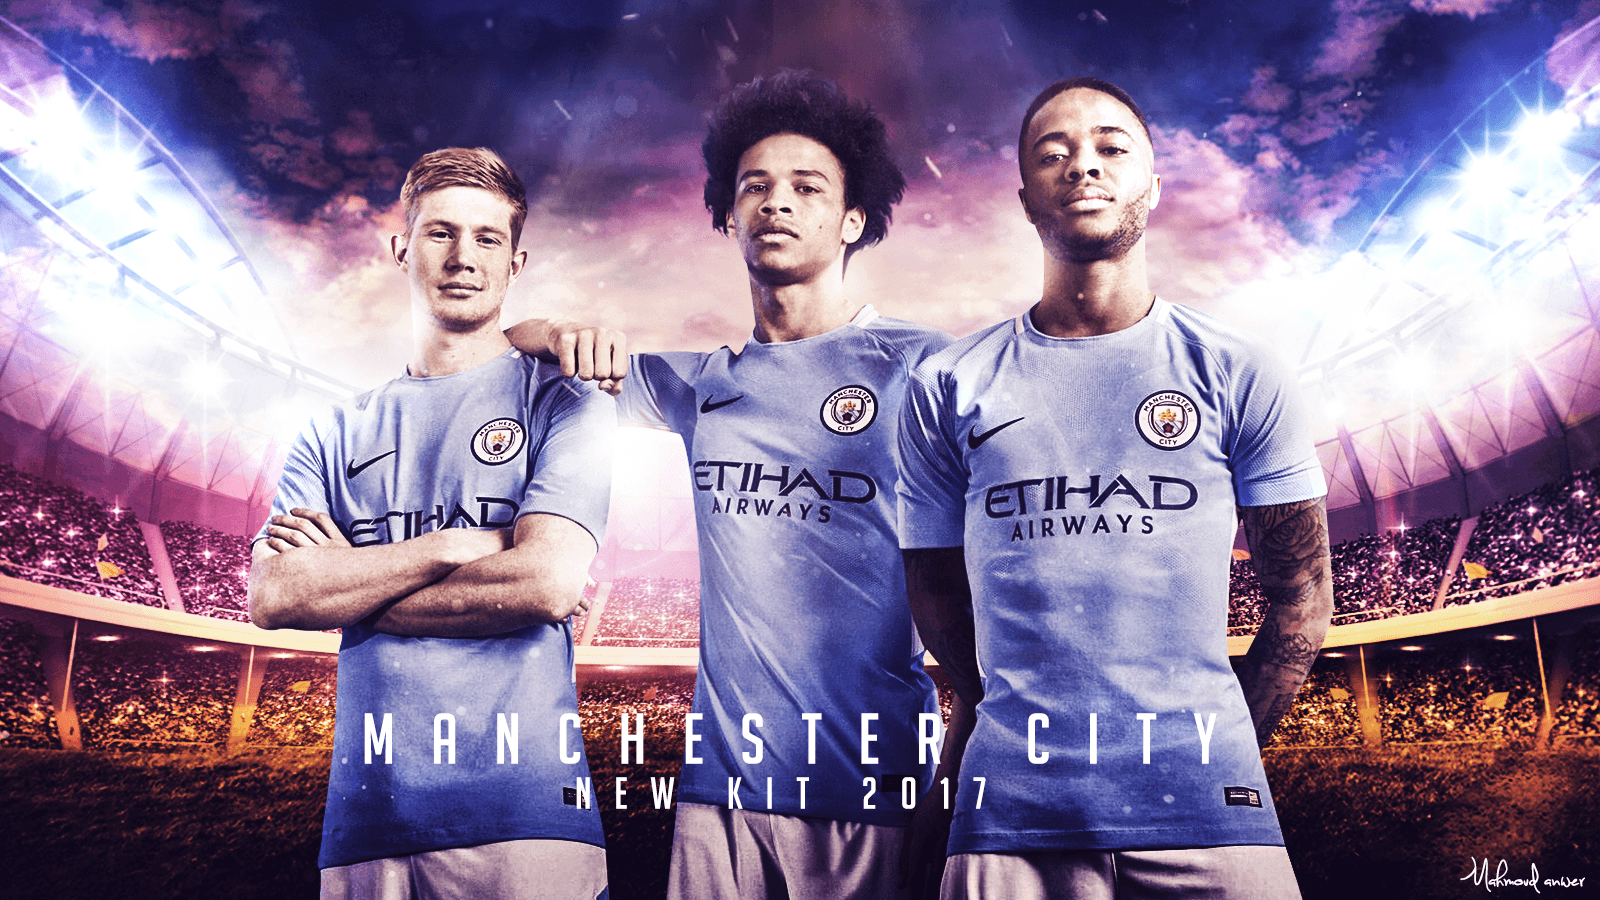 Manchester City 2017 wallpaper